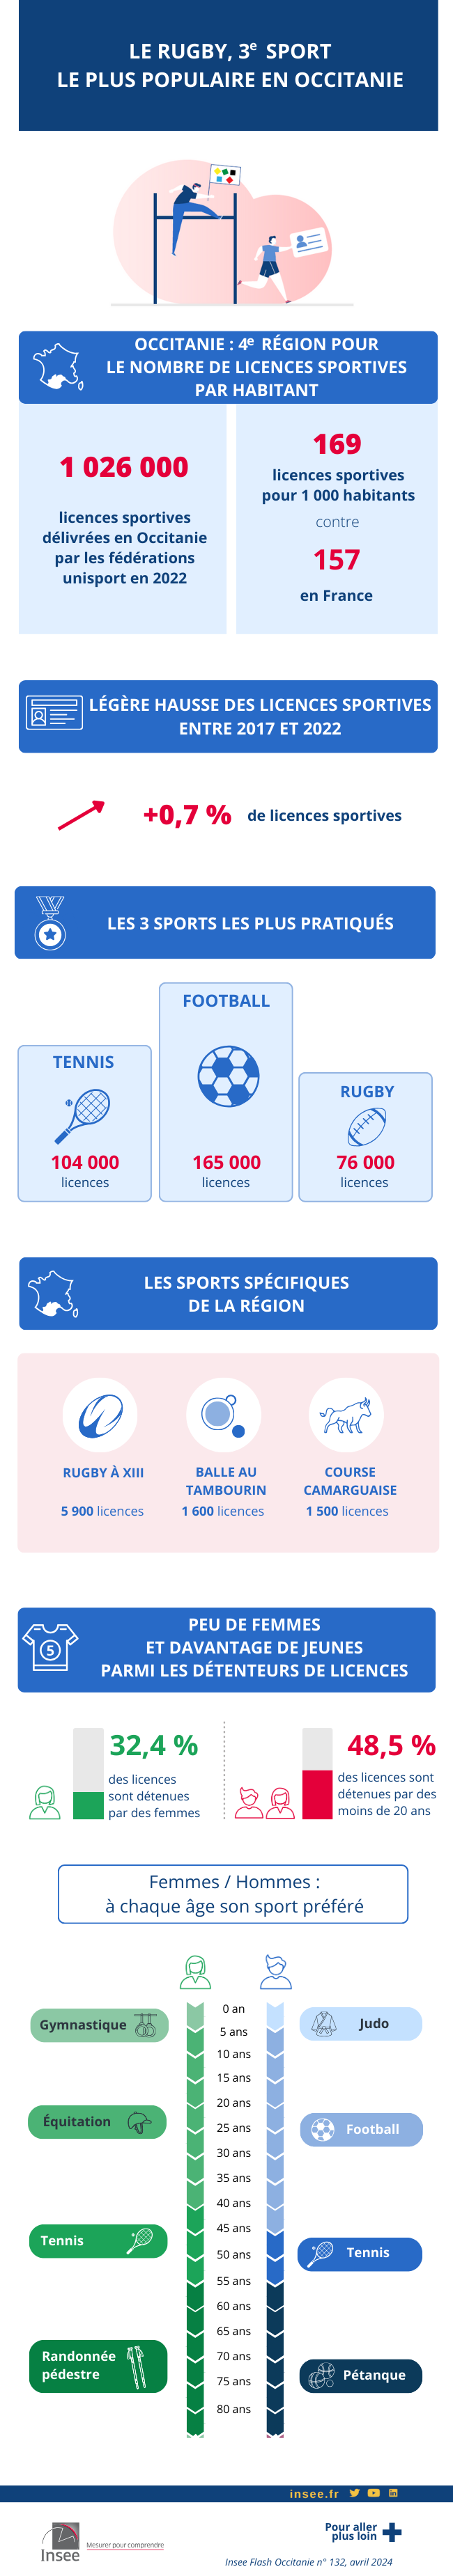 Infographie sur le sport en Occitanie en 2022